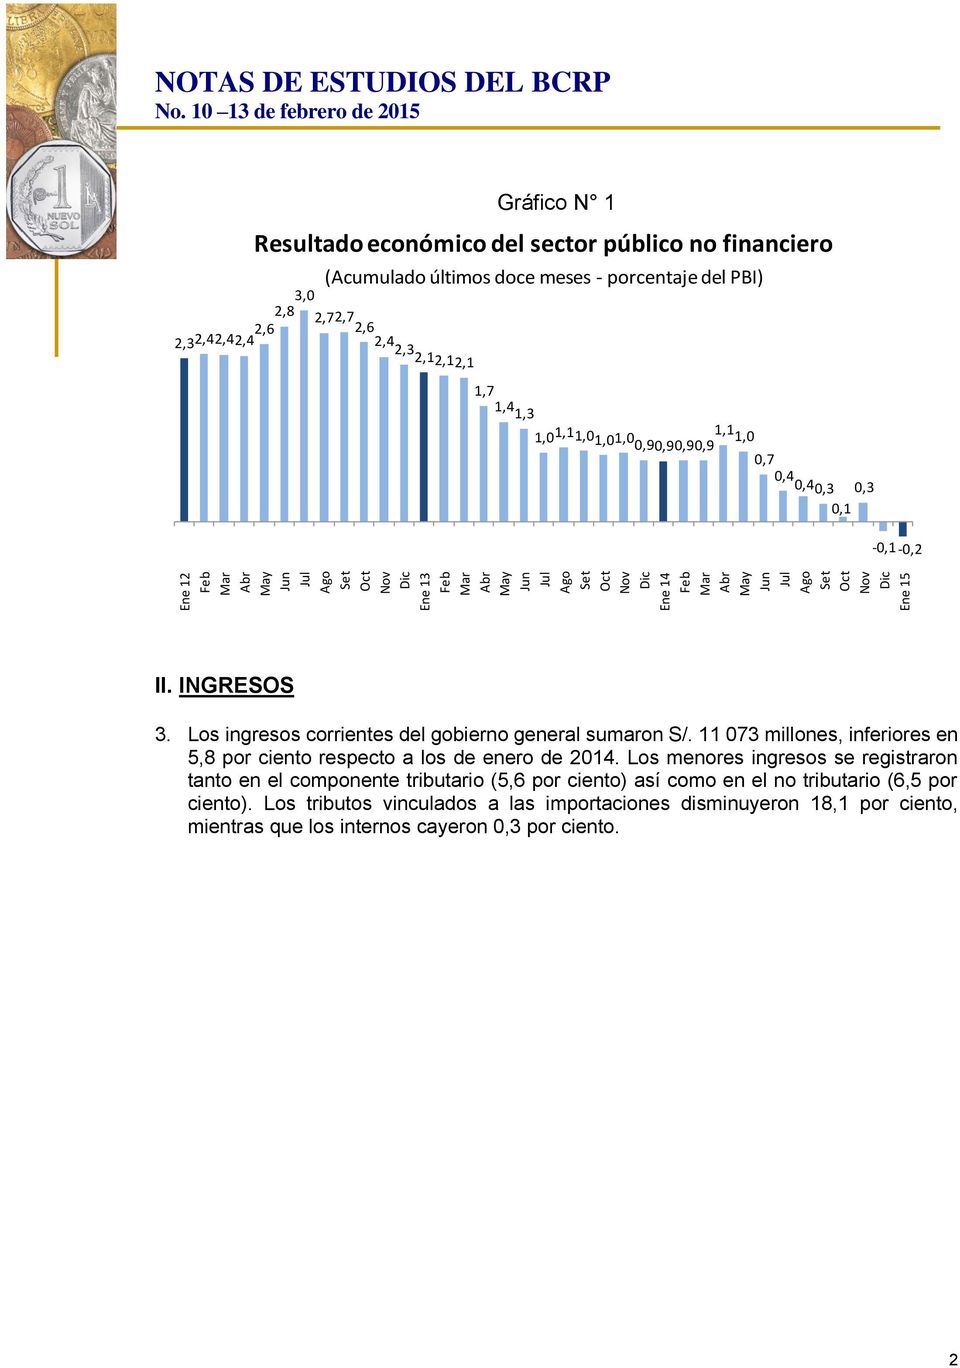 Los ingresos corrientes del gobierno general sumaron S/. 11 073 millones, inferiores en 5,8 por ciento respecto a los de enero de 2014.